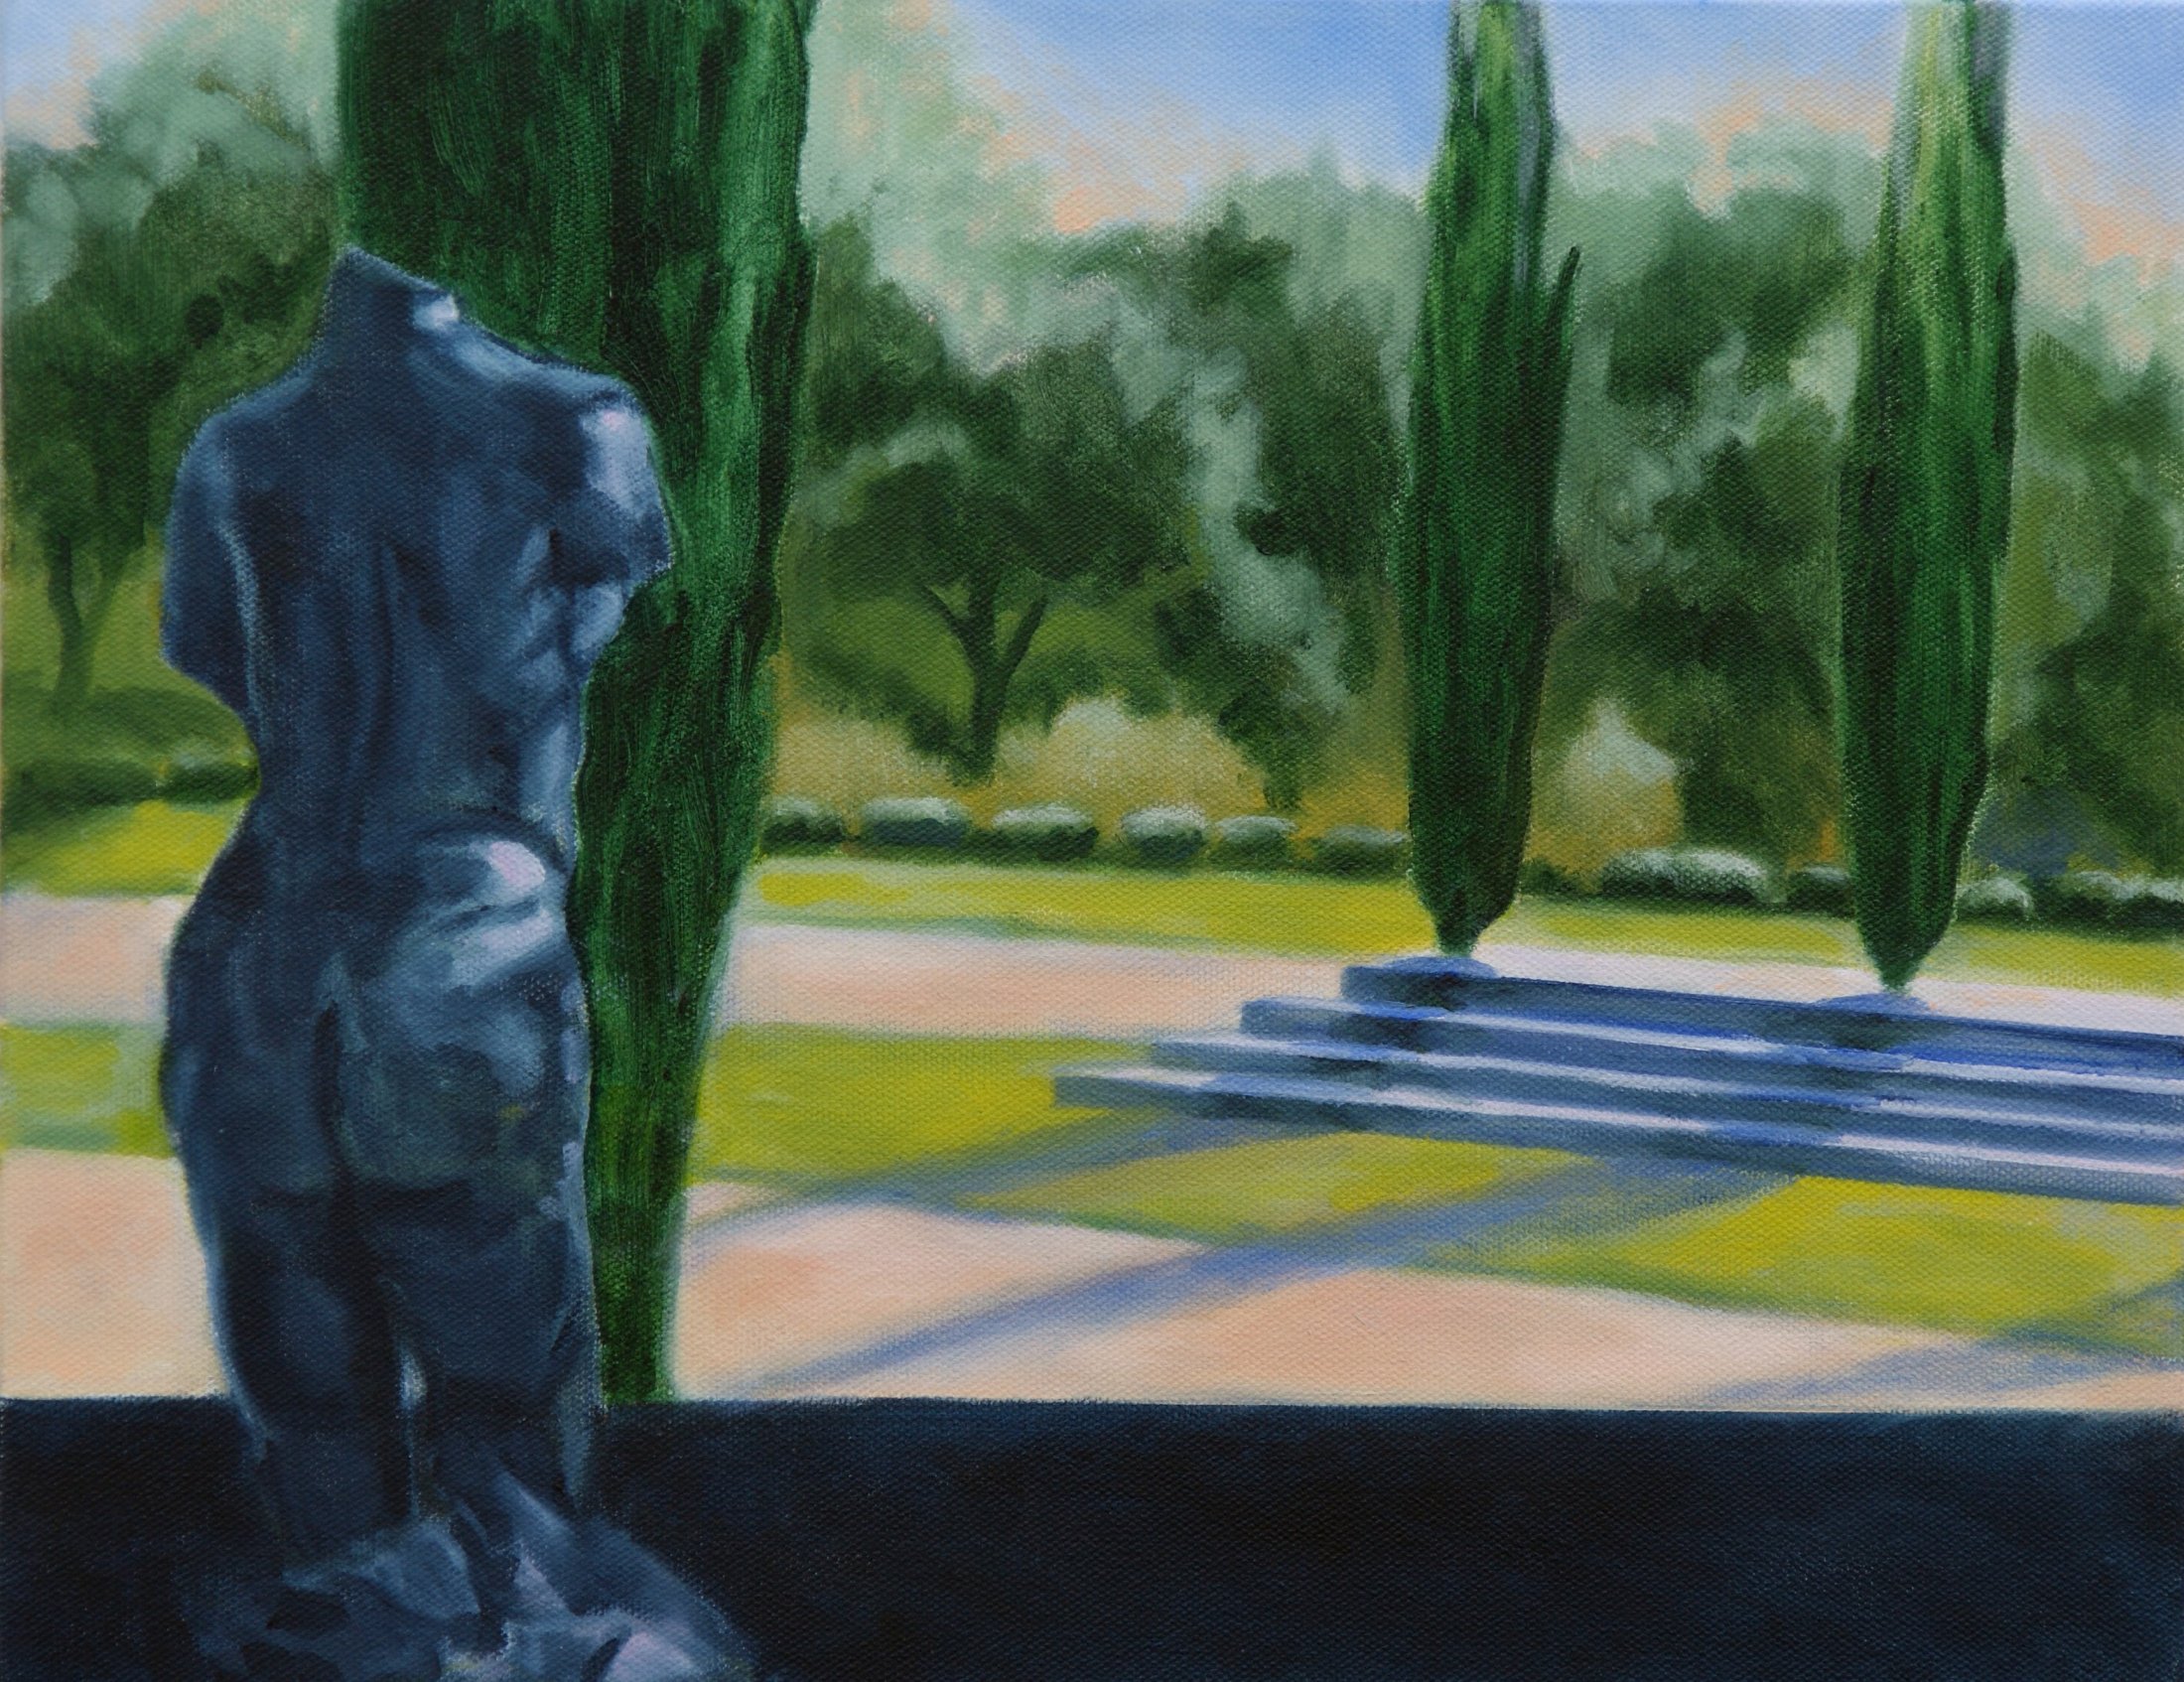 Stanford Rodin Garden